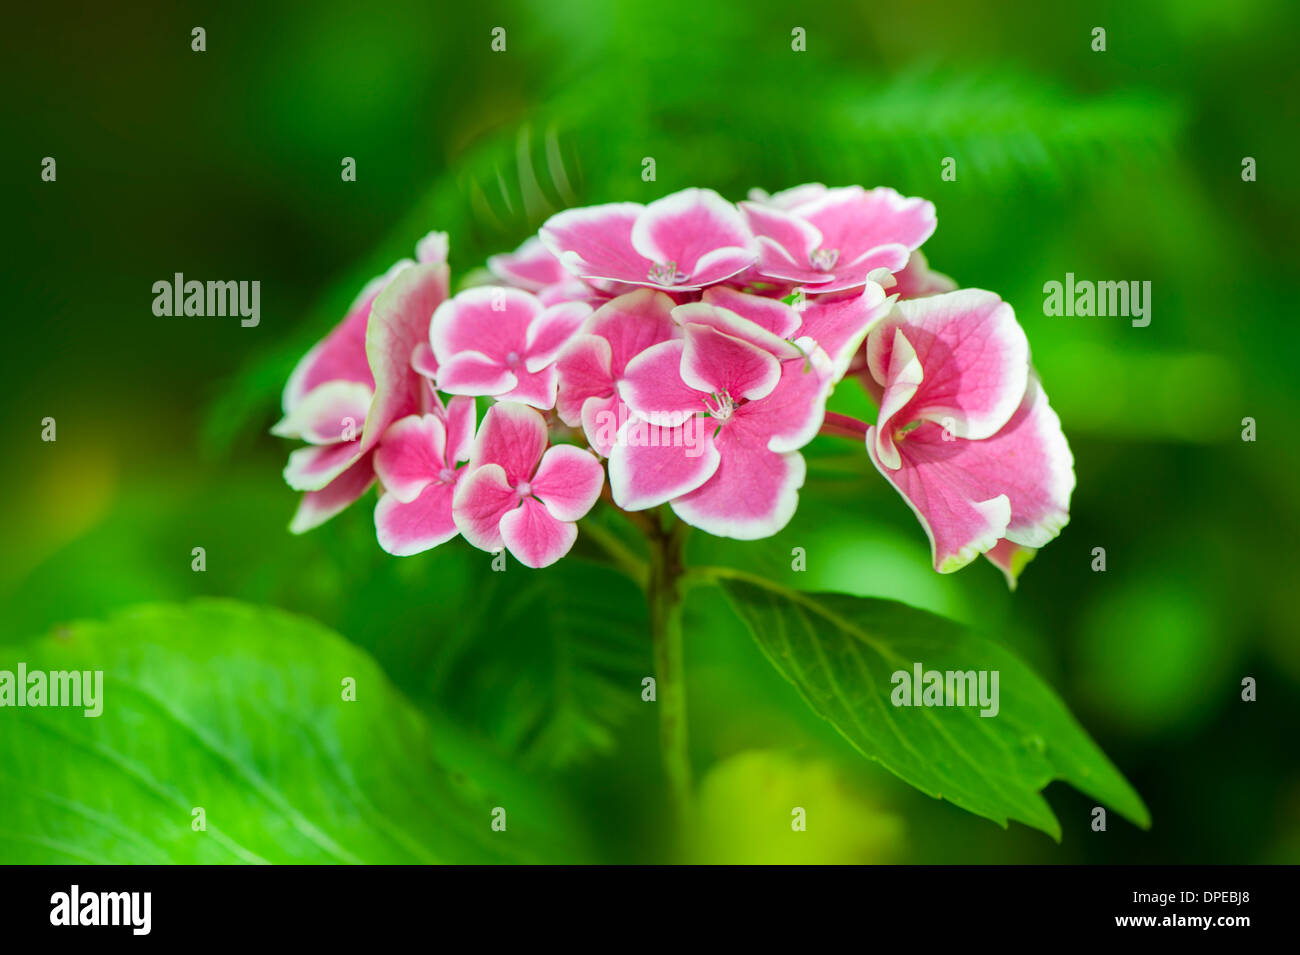 Close-up immagine della splendida fioritura estiva Bottoni e archi Hydrangea che mostra i fiori di colore rosa con delicata bordatura bianca. Foto Stock